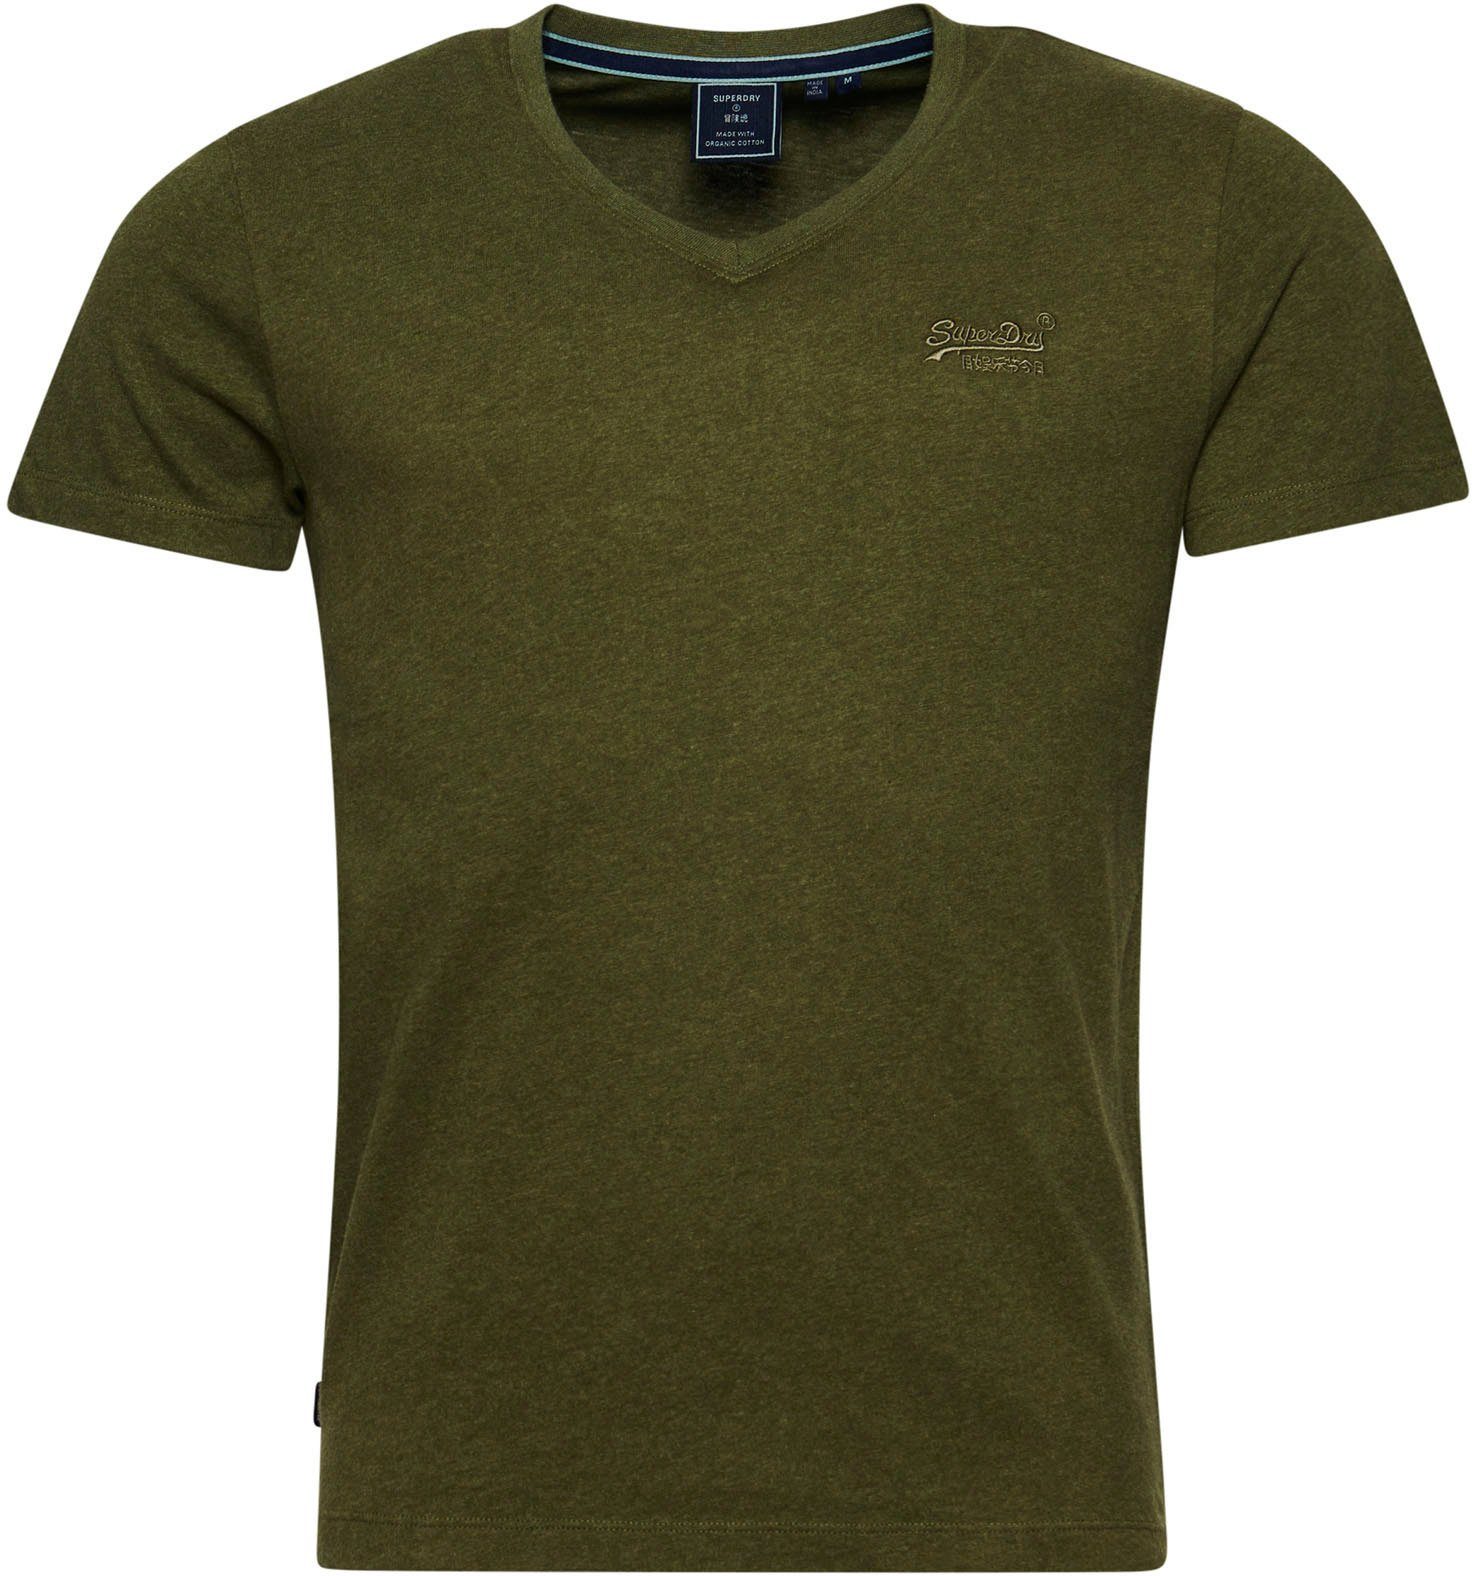 EMB VEE VINTAGE Superdry LOGO marl olive thrift V-Shirt